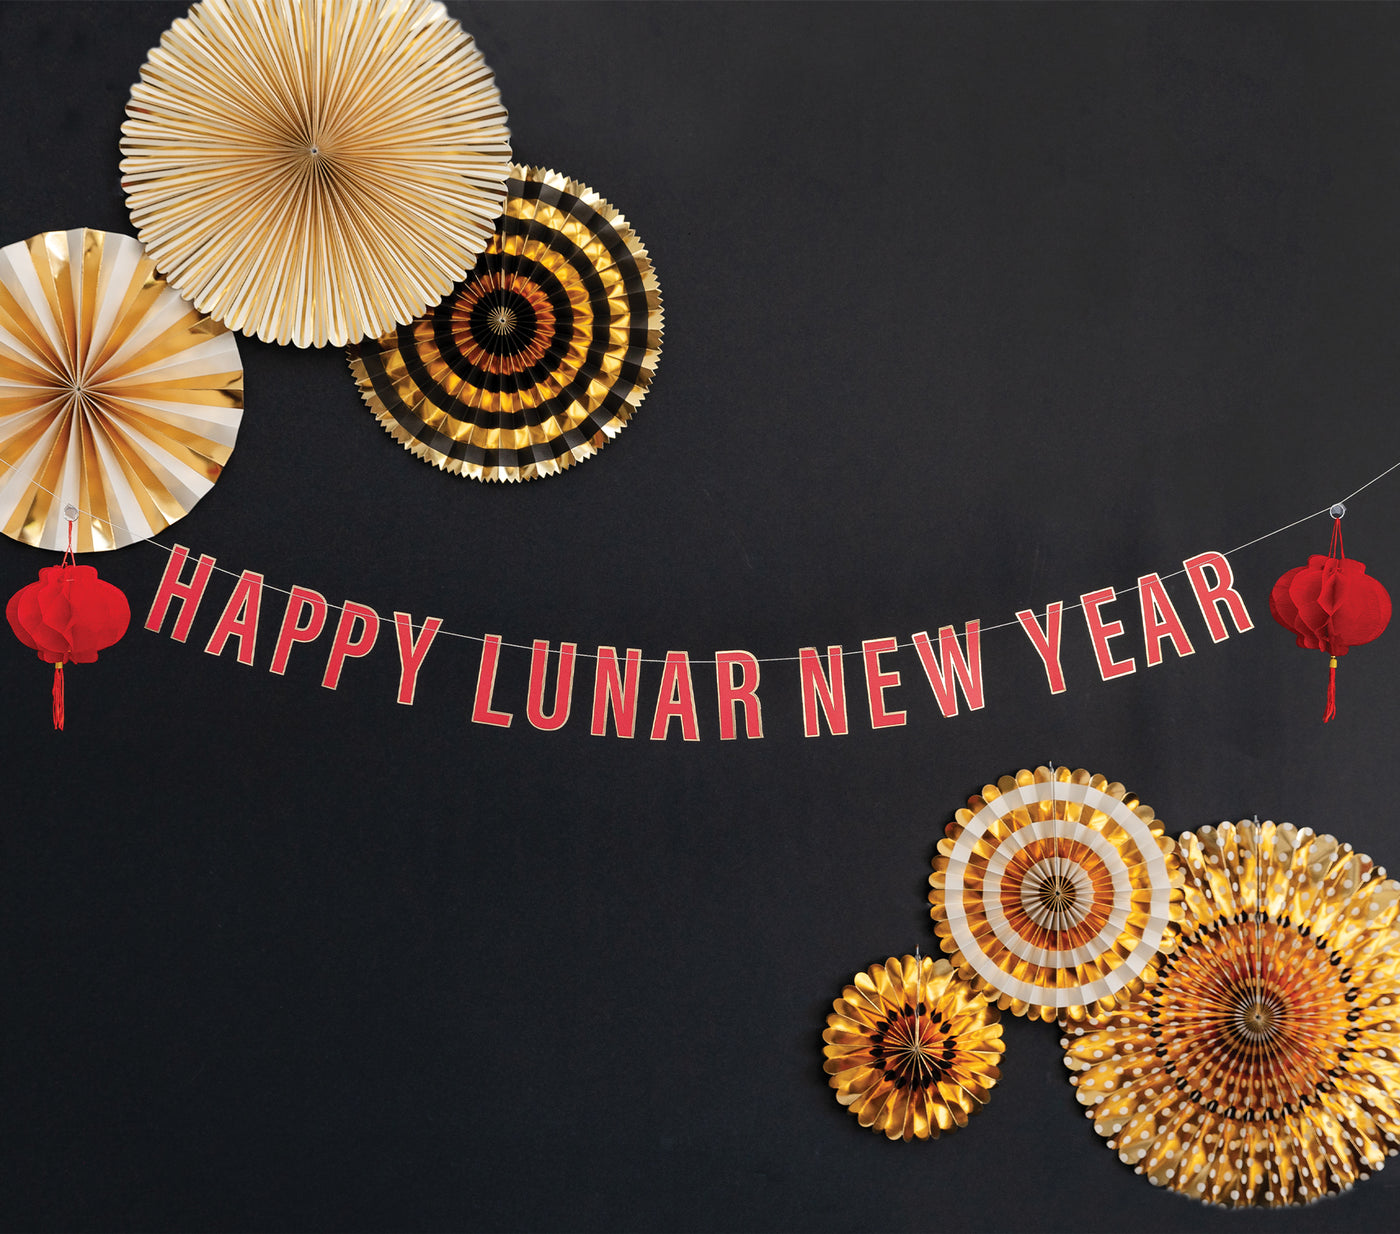 PLNY103 - Happy Lunar New Year Banner